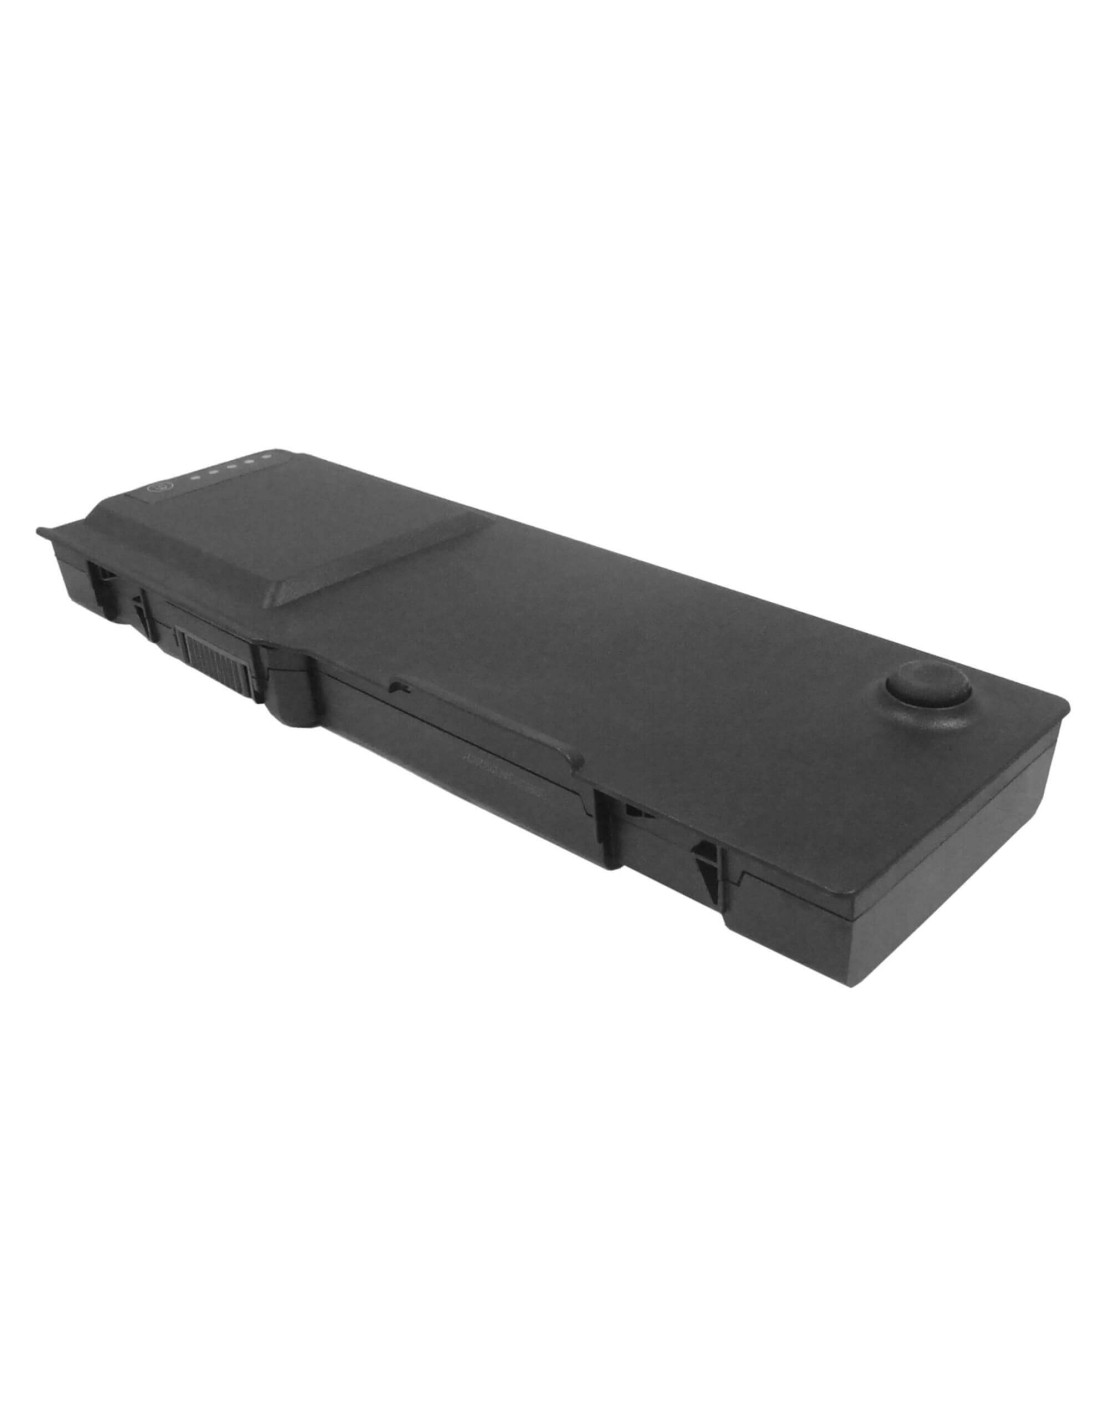 Black Battery for Dell Latitude 131l, Inspiron 1501, Inspiron E1505 11.1V, 6600mAh - 73.26Wh